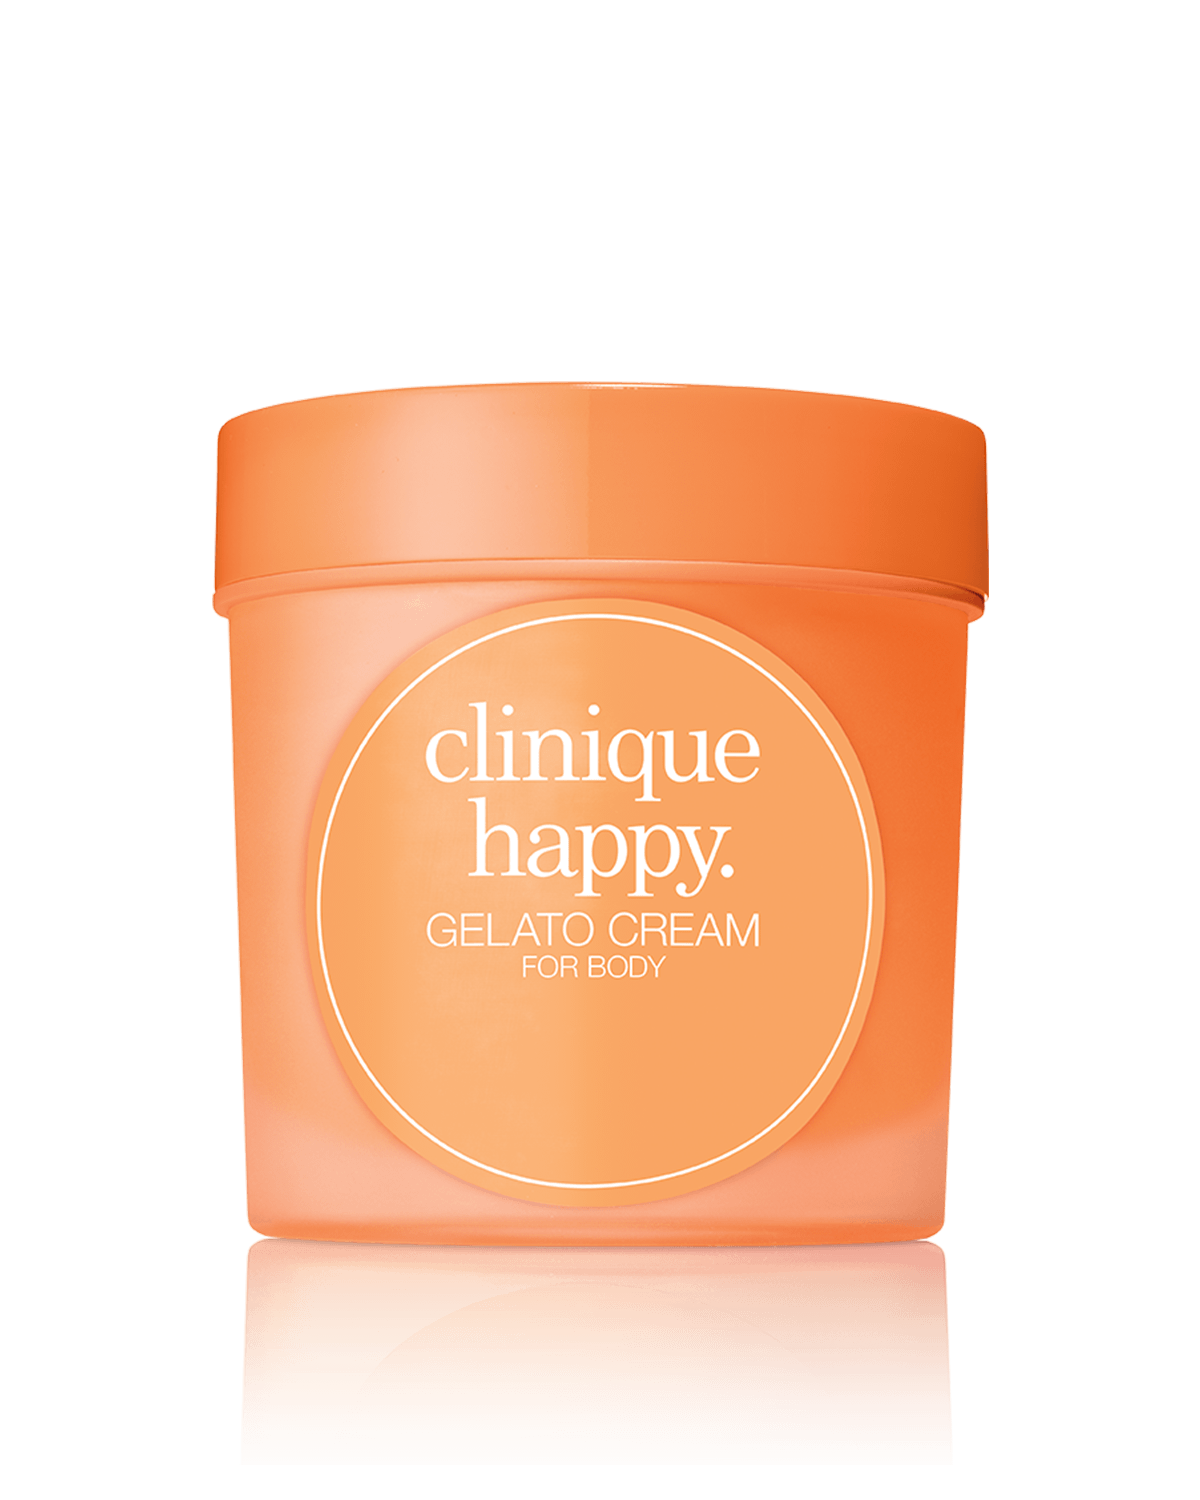 Clinique Happy Gelato Cream for Body